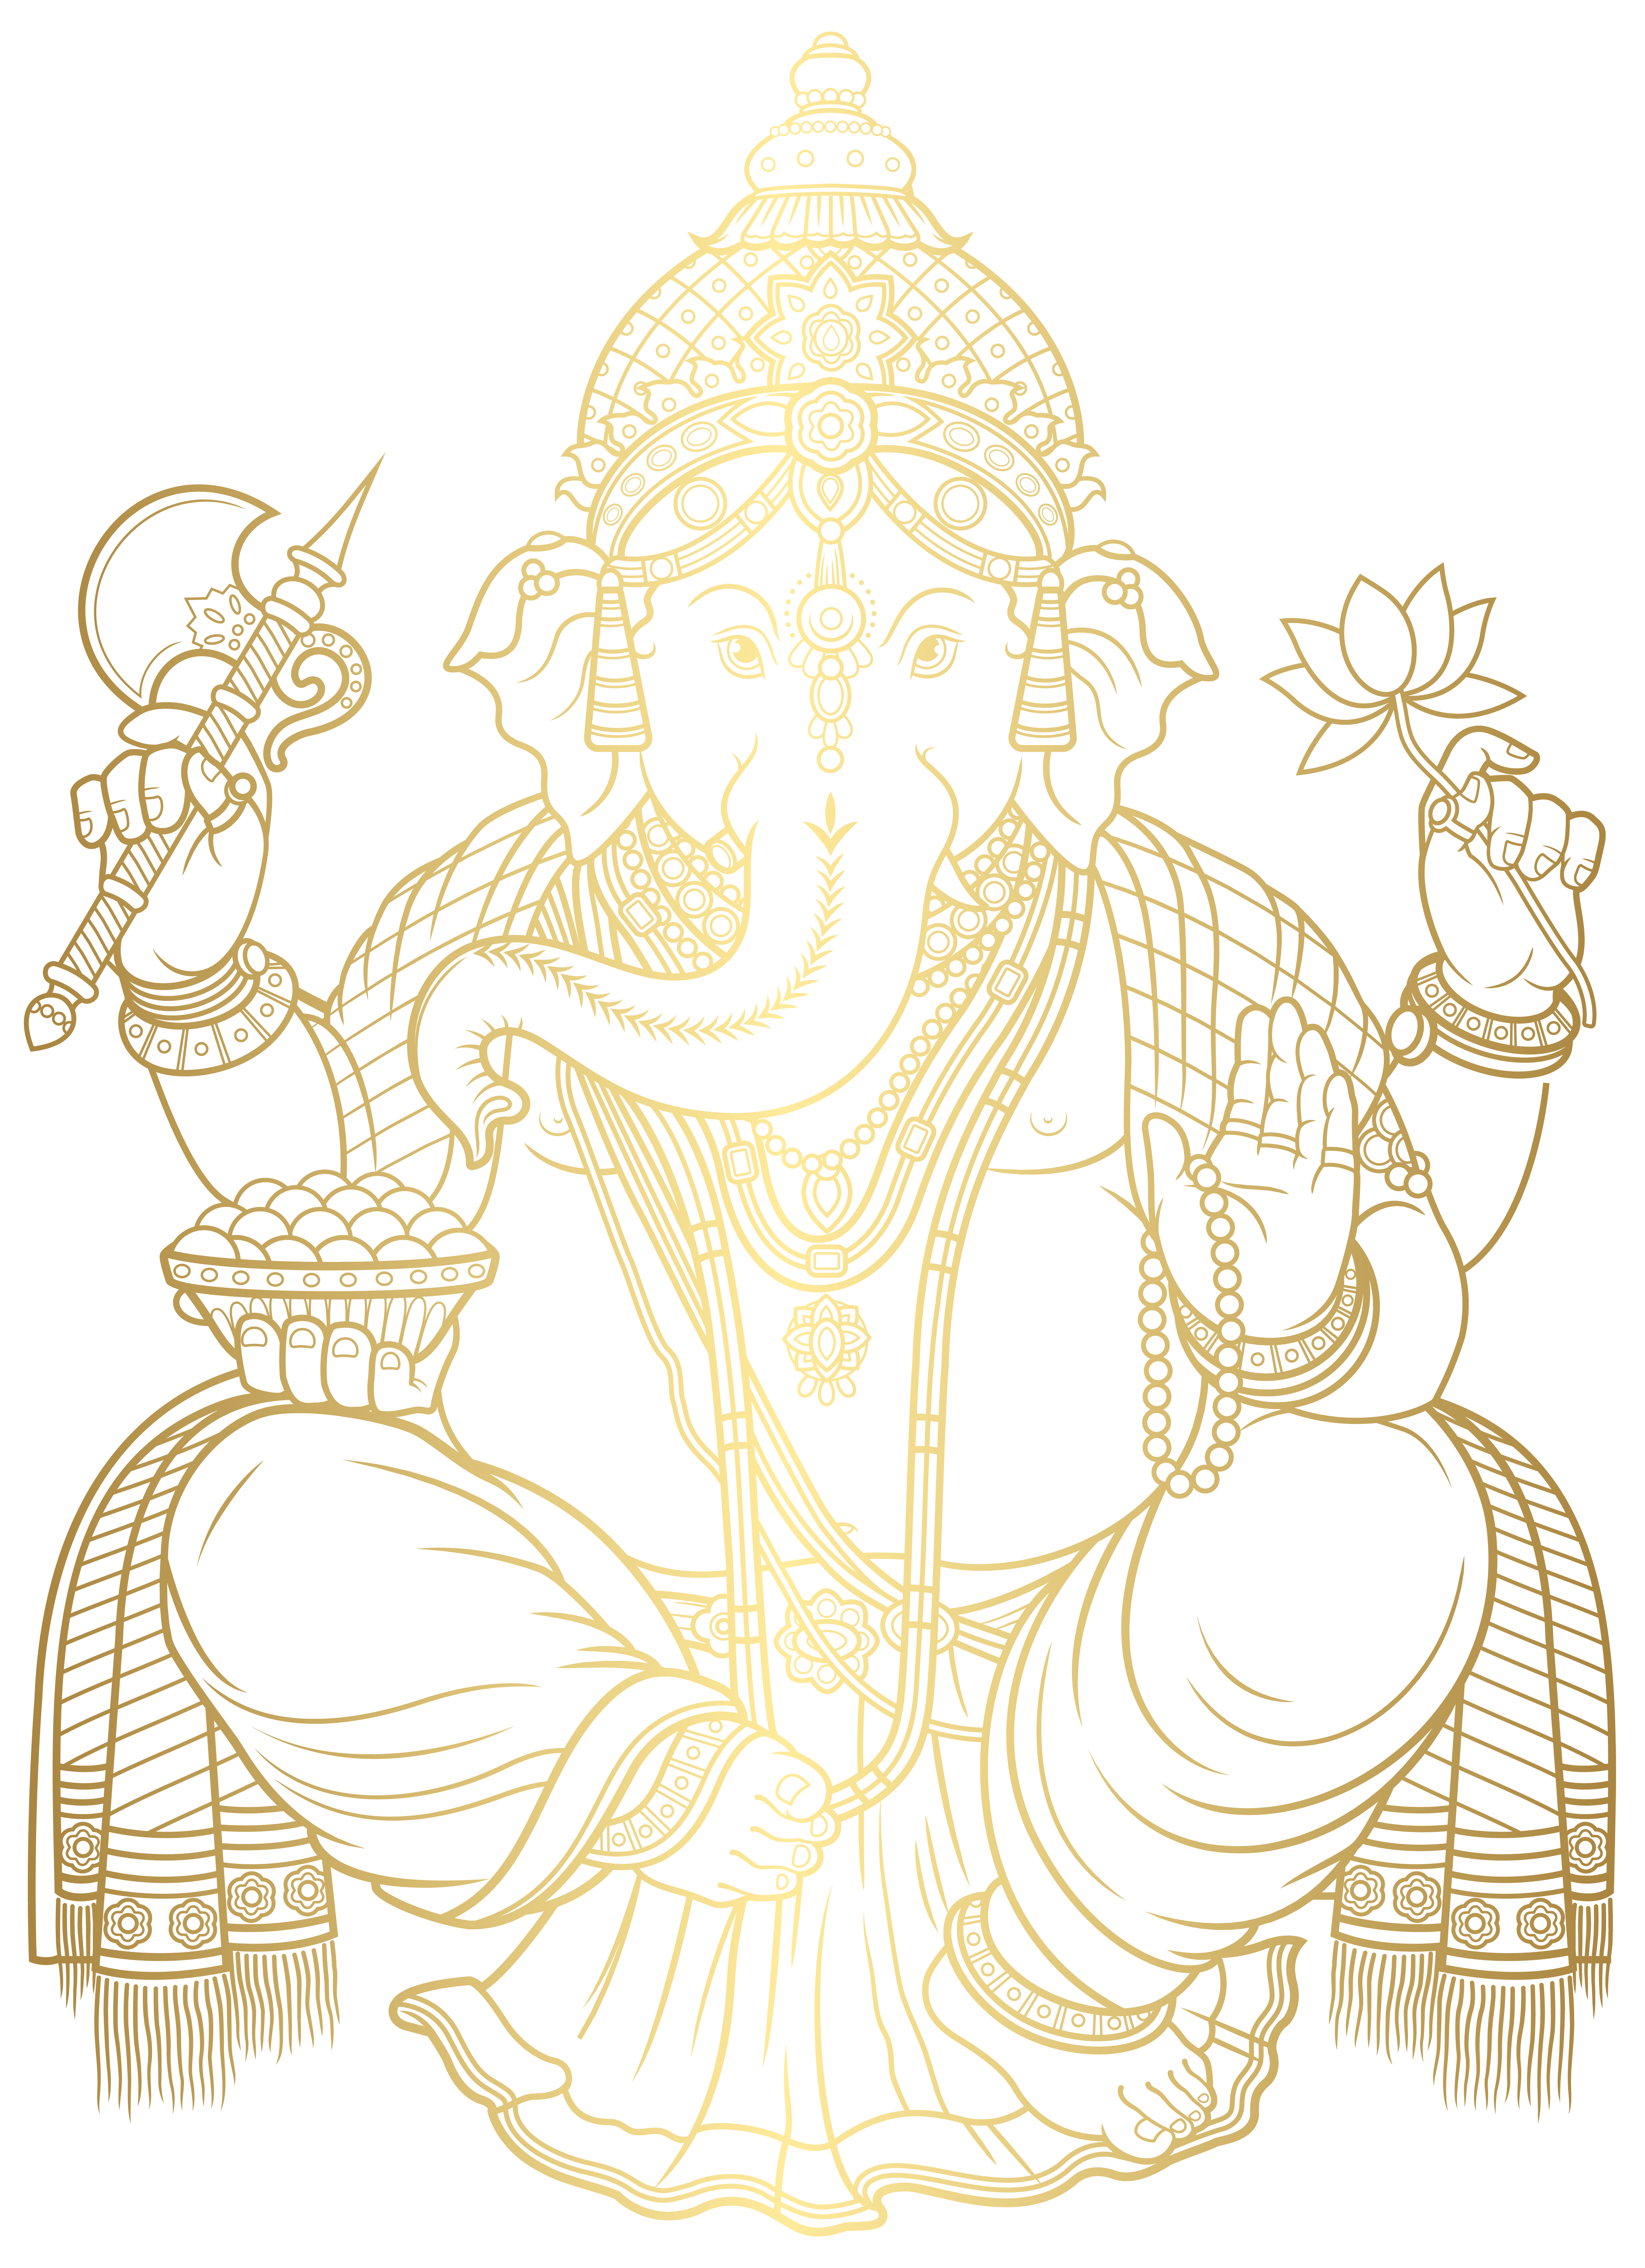 Ganesha Gold PNG Clip Art Image